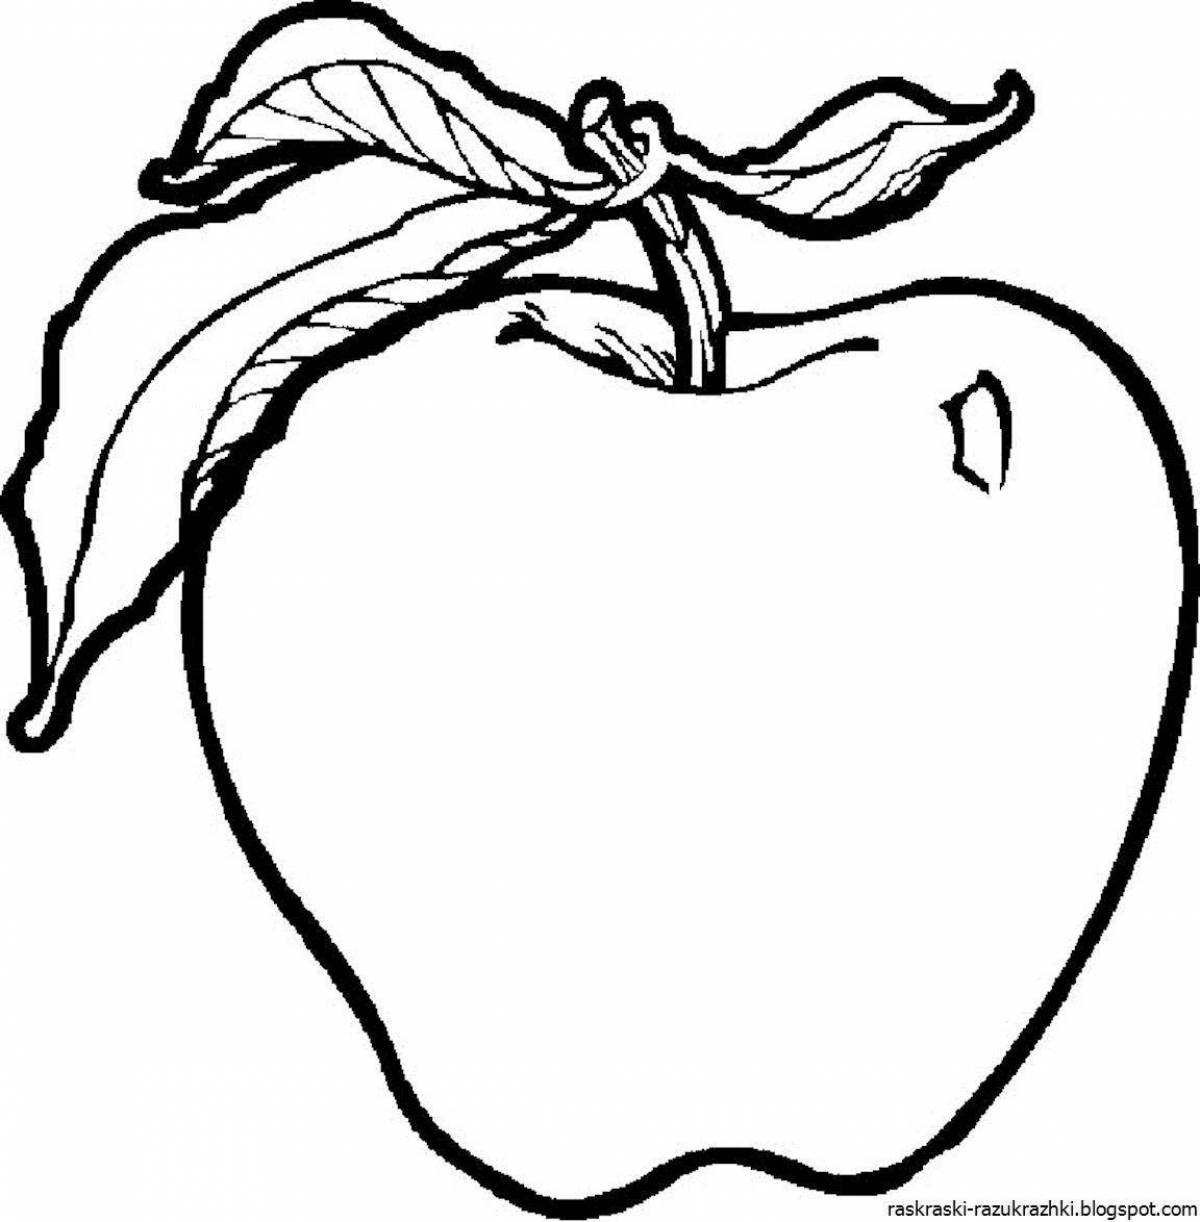 Радостный рисунок яблока для детей